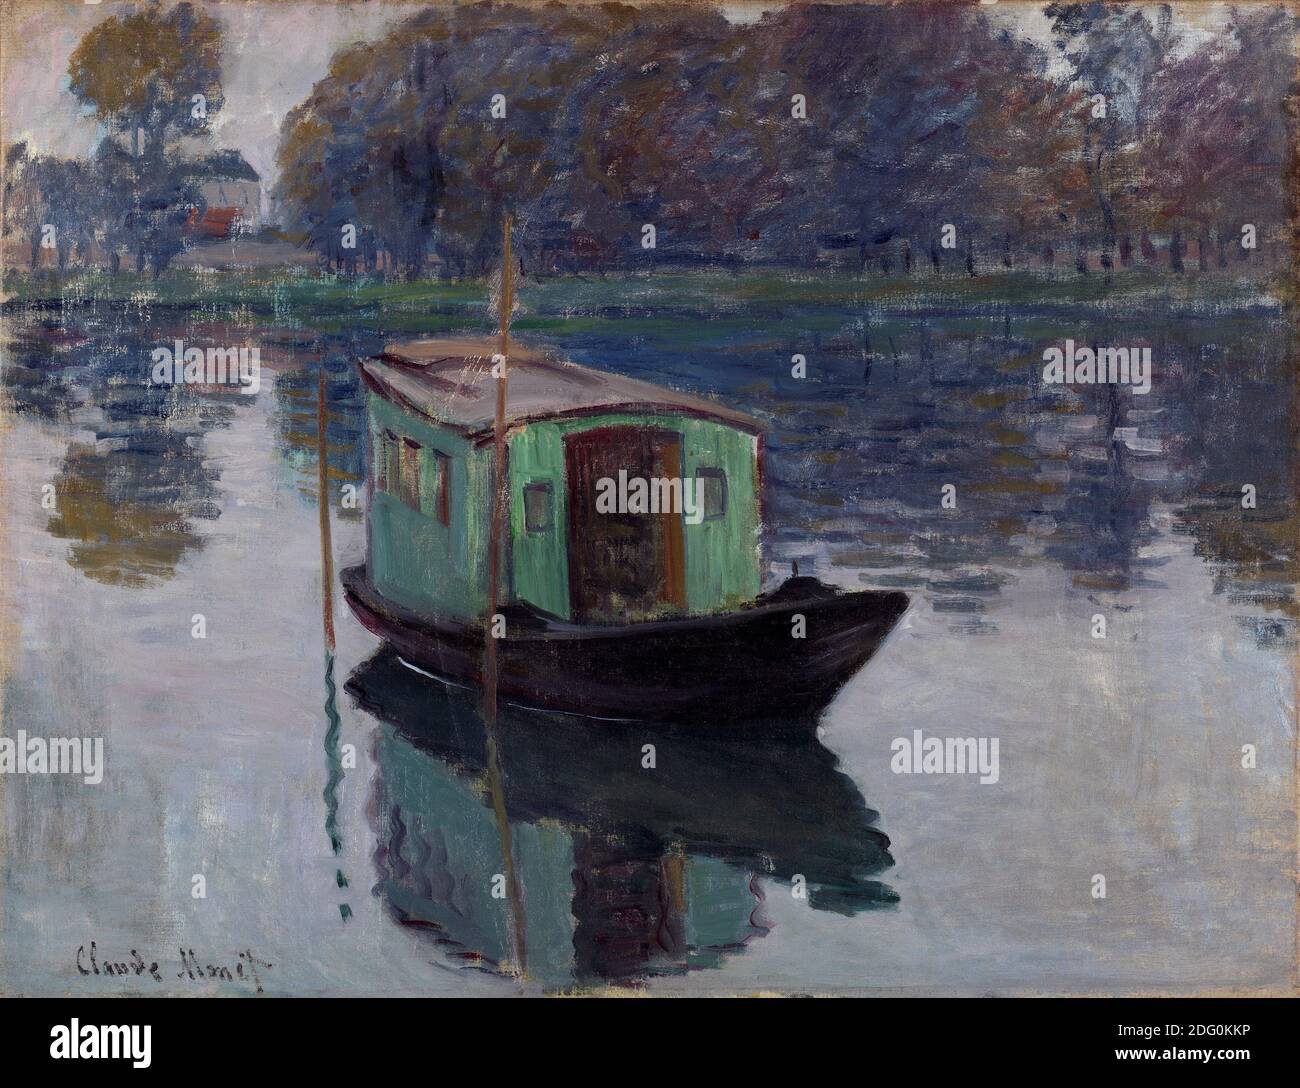 Titre: The Boat Studio Créateur: Claude Monet Date: 1874 Moyen: Huile sur toile dimension: 50,2 x 65,5 cm emplacement: Rijksmuseum Kroller-Muller Banque D'Images